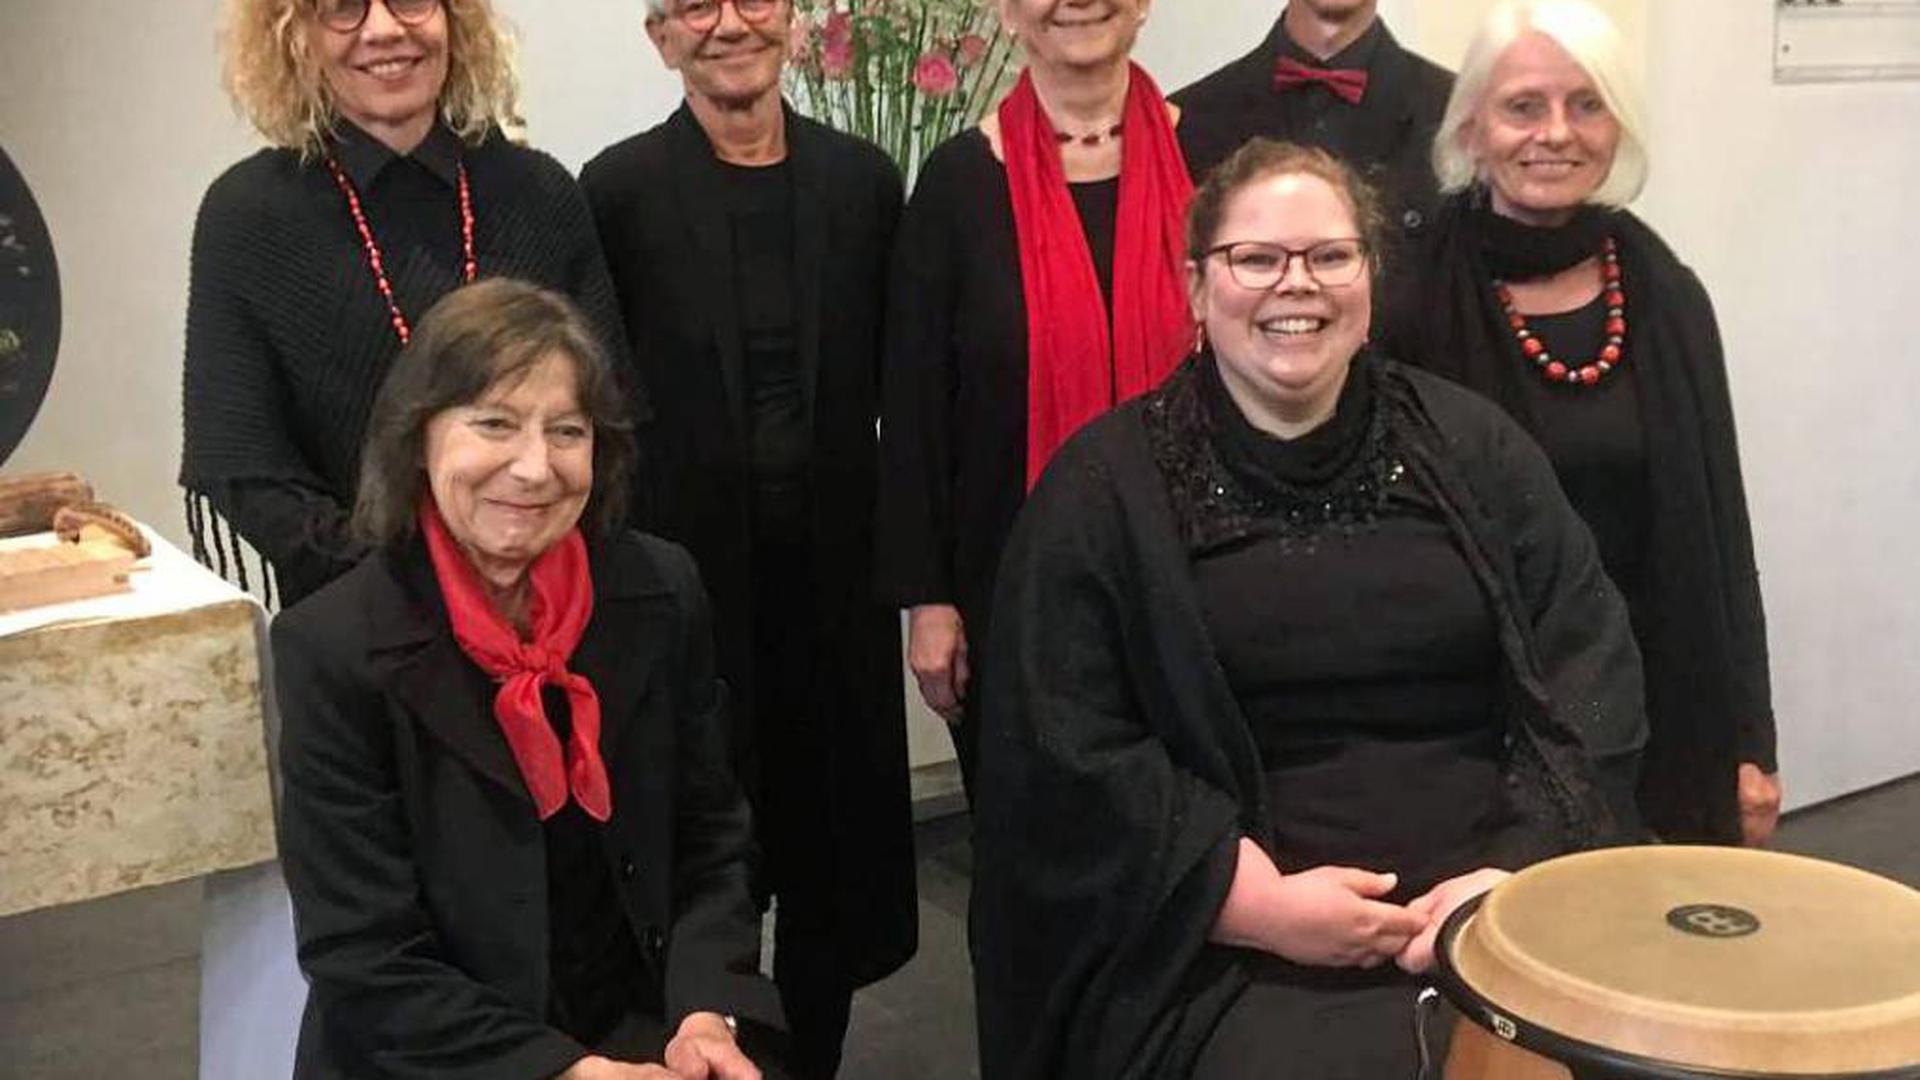 Zur Gruppe Schallwellen haben sich Hospizmitarbeiter zusammengeschlossen. Sie singen und musizieren am 13. Mai in der Paulusgemeinde Ettlingen.